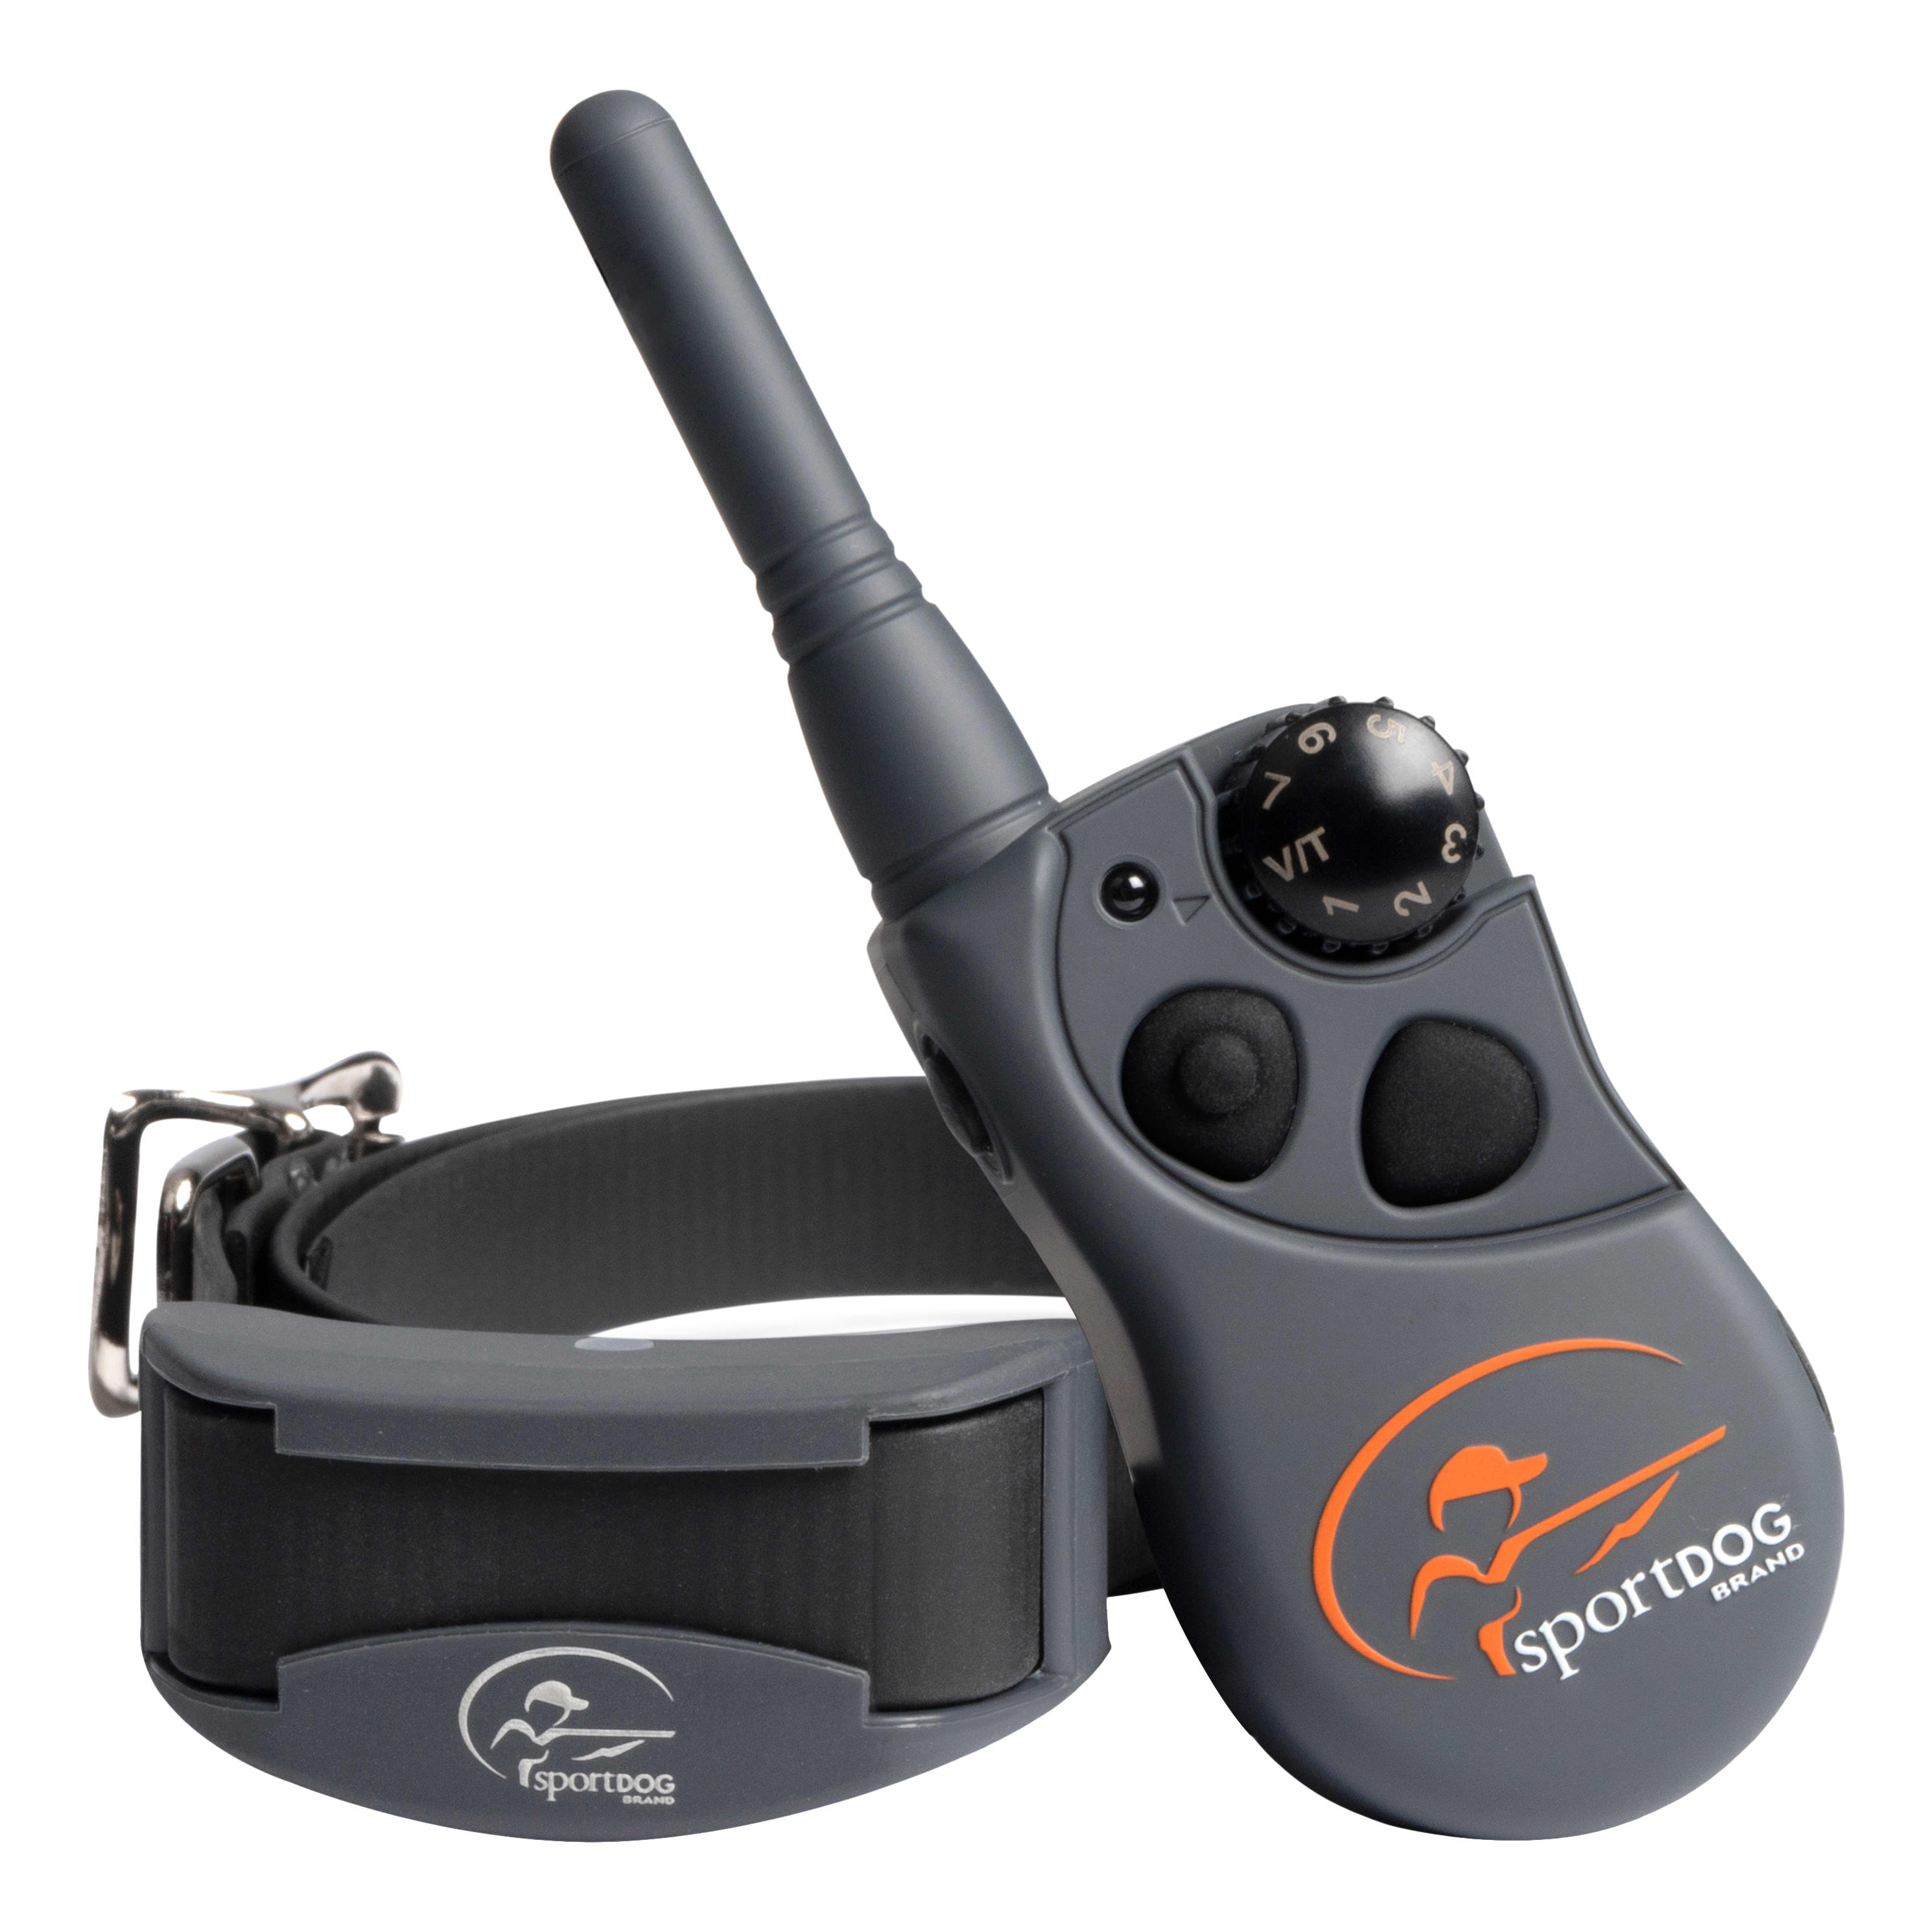 SportDOG Brand® FieldTrainer® 425XS Remote Trainer